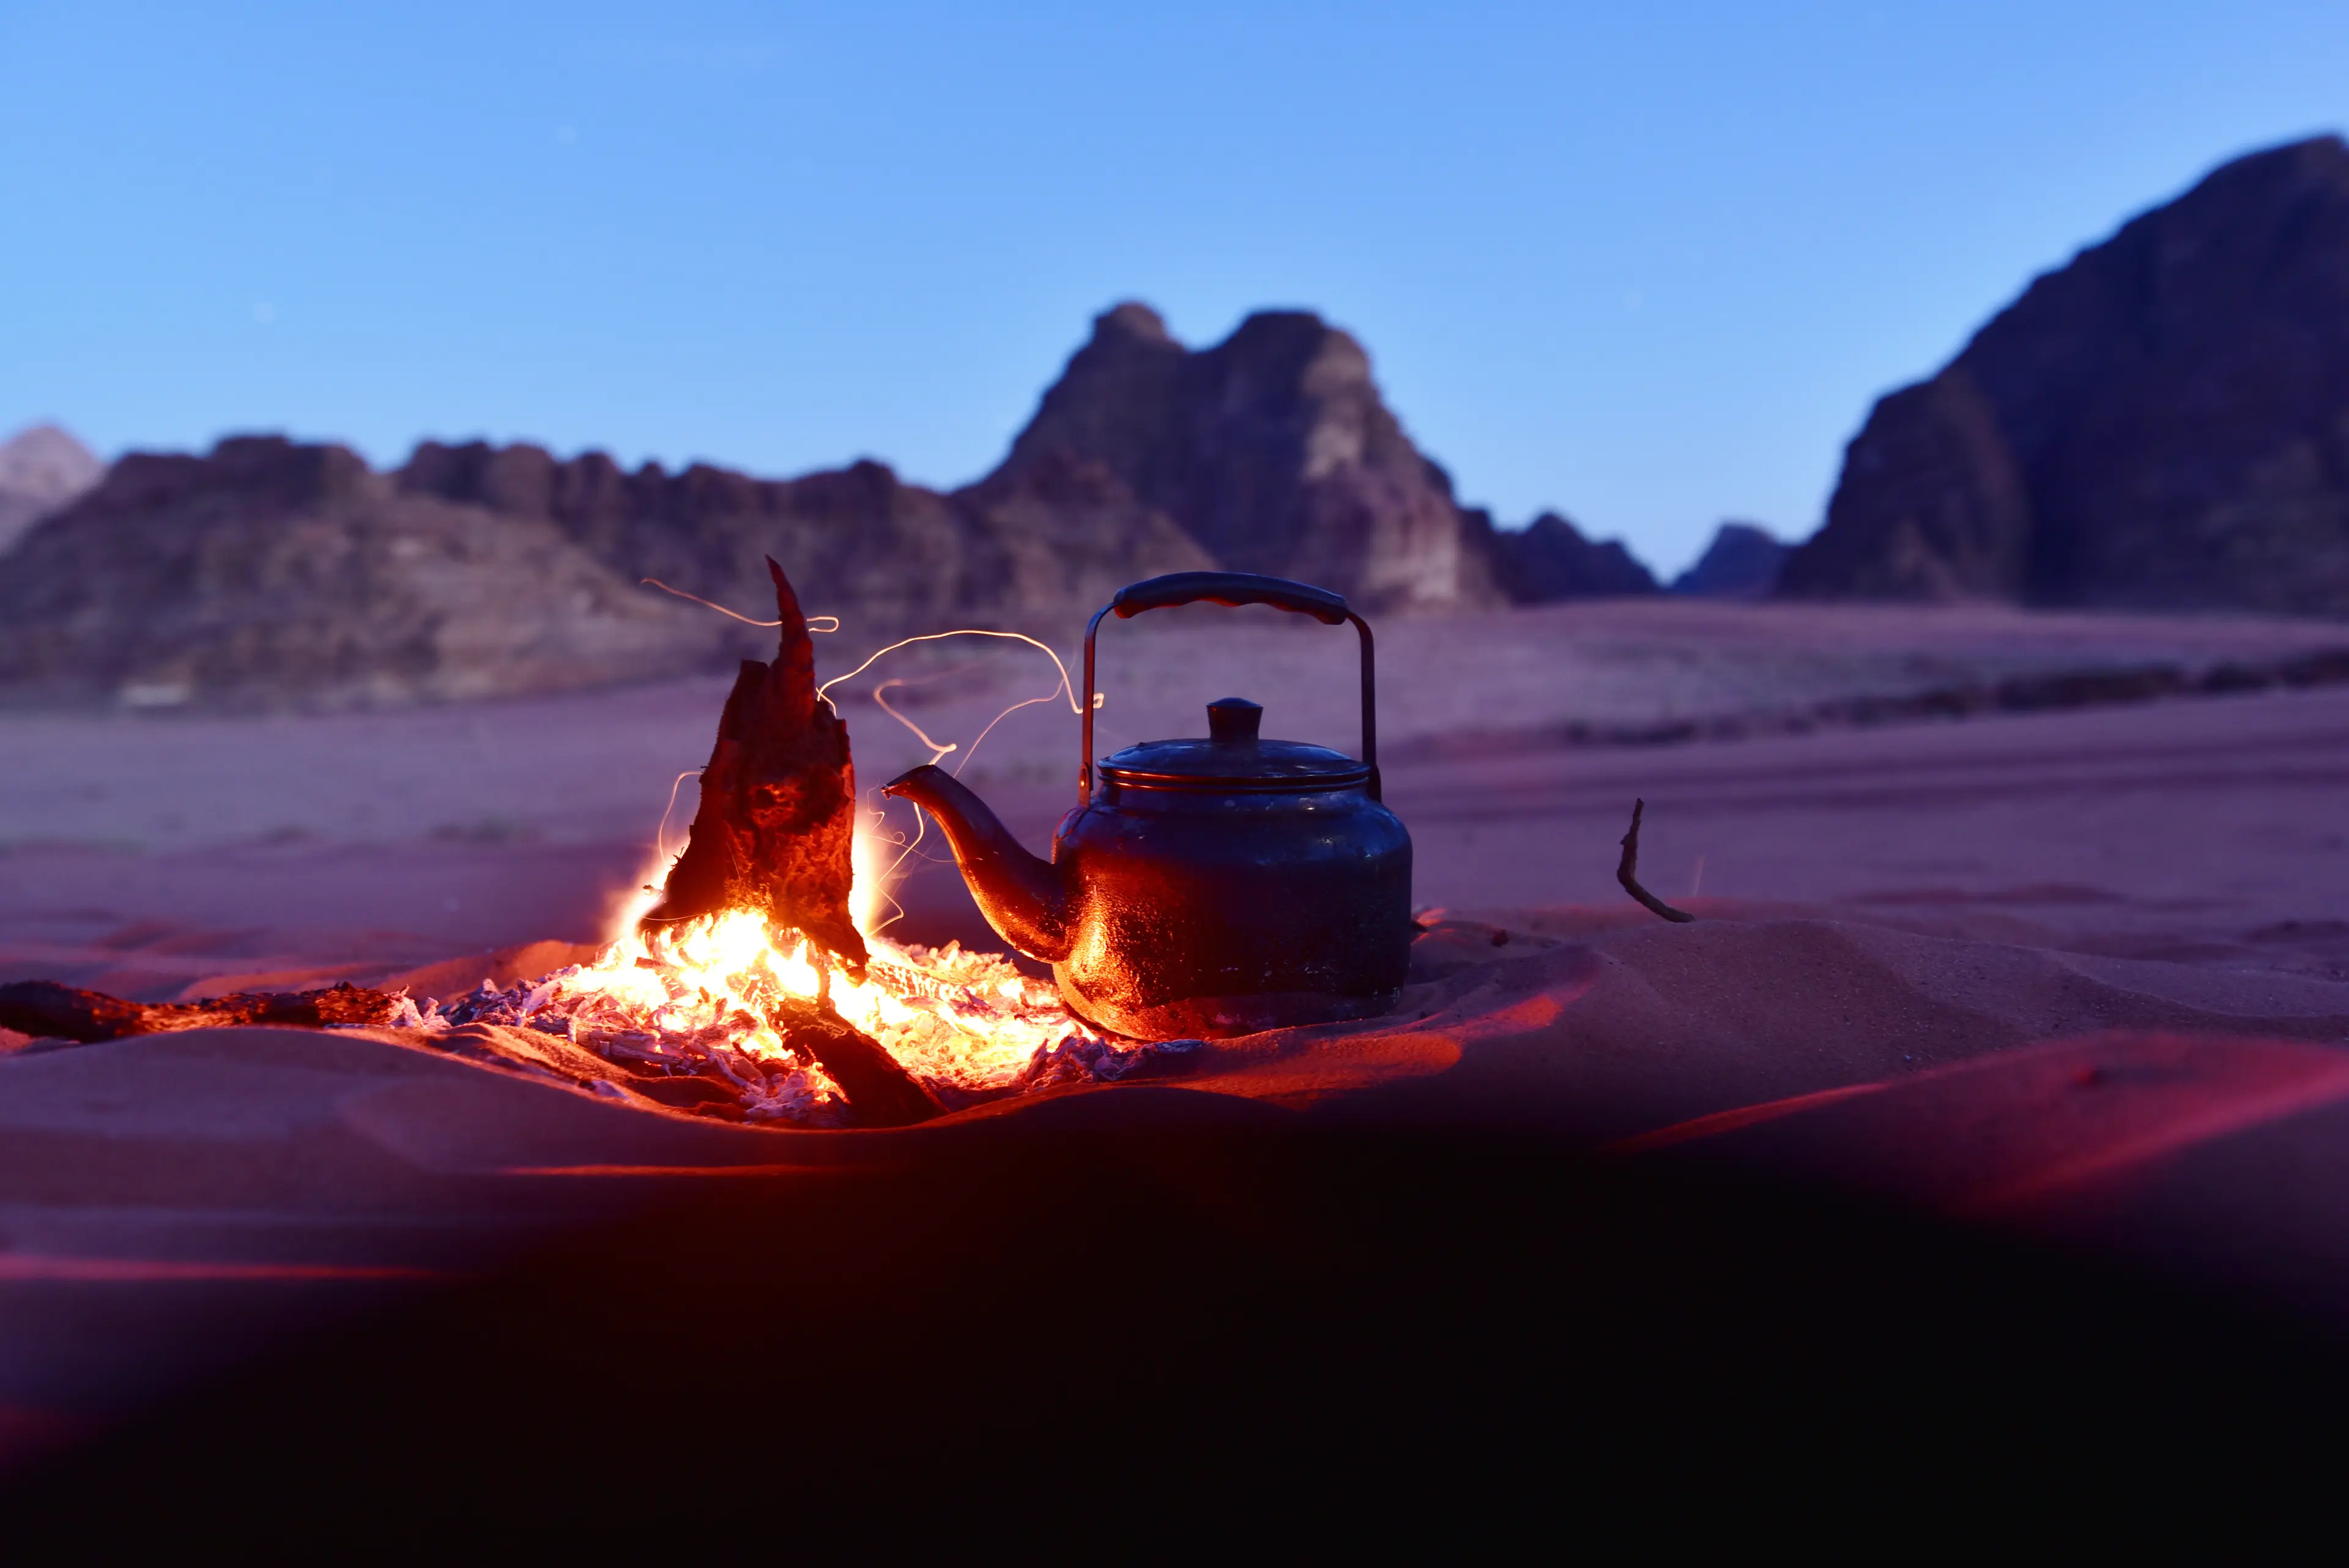 Boiling tea in the desert